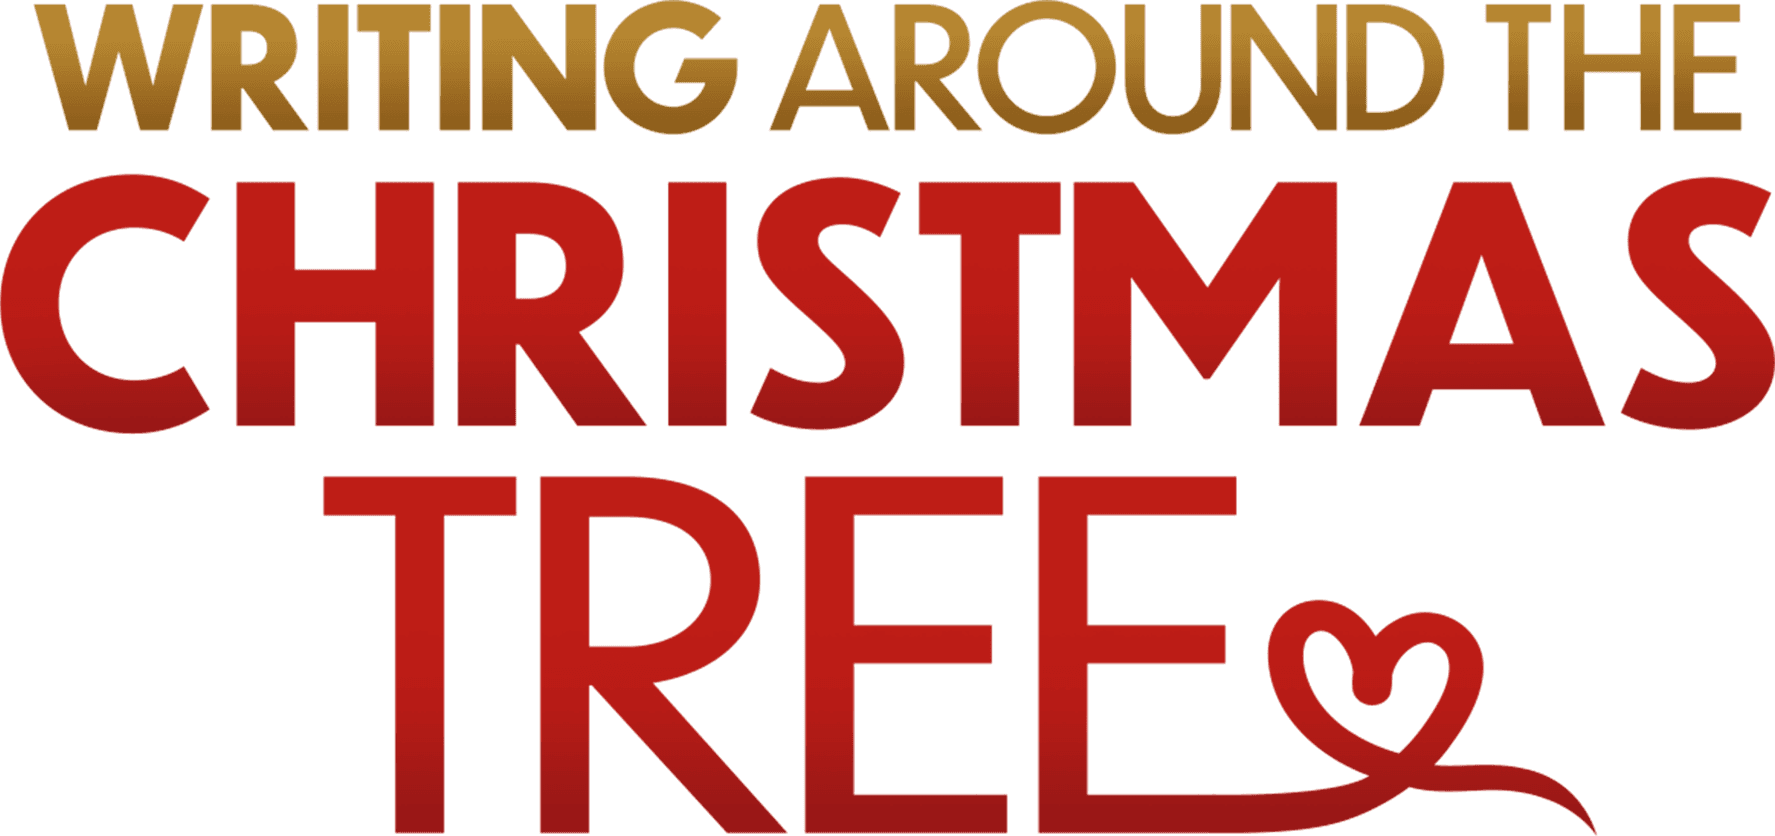 Writing Around the Christmas Tree logo